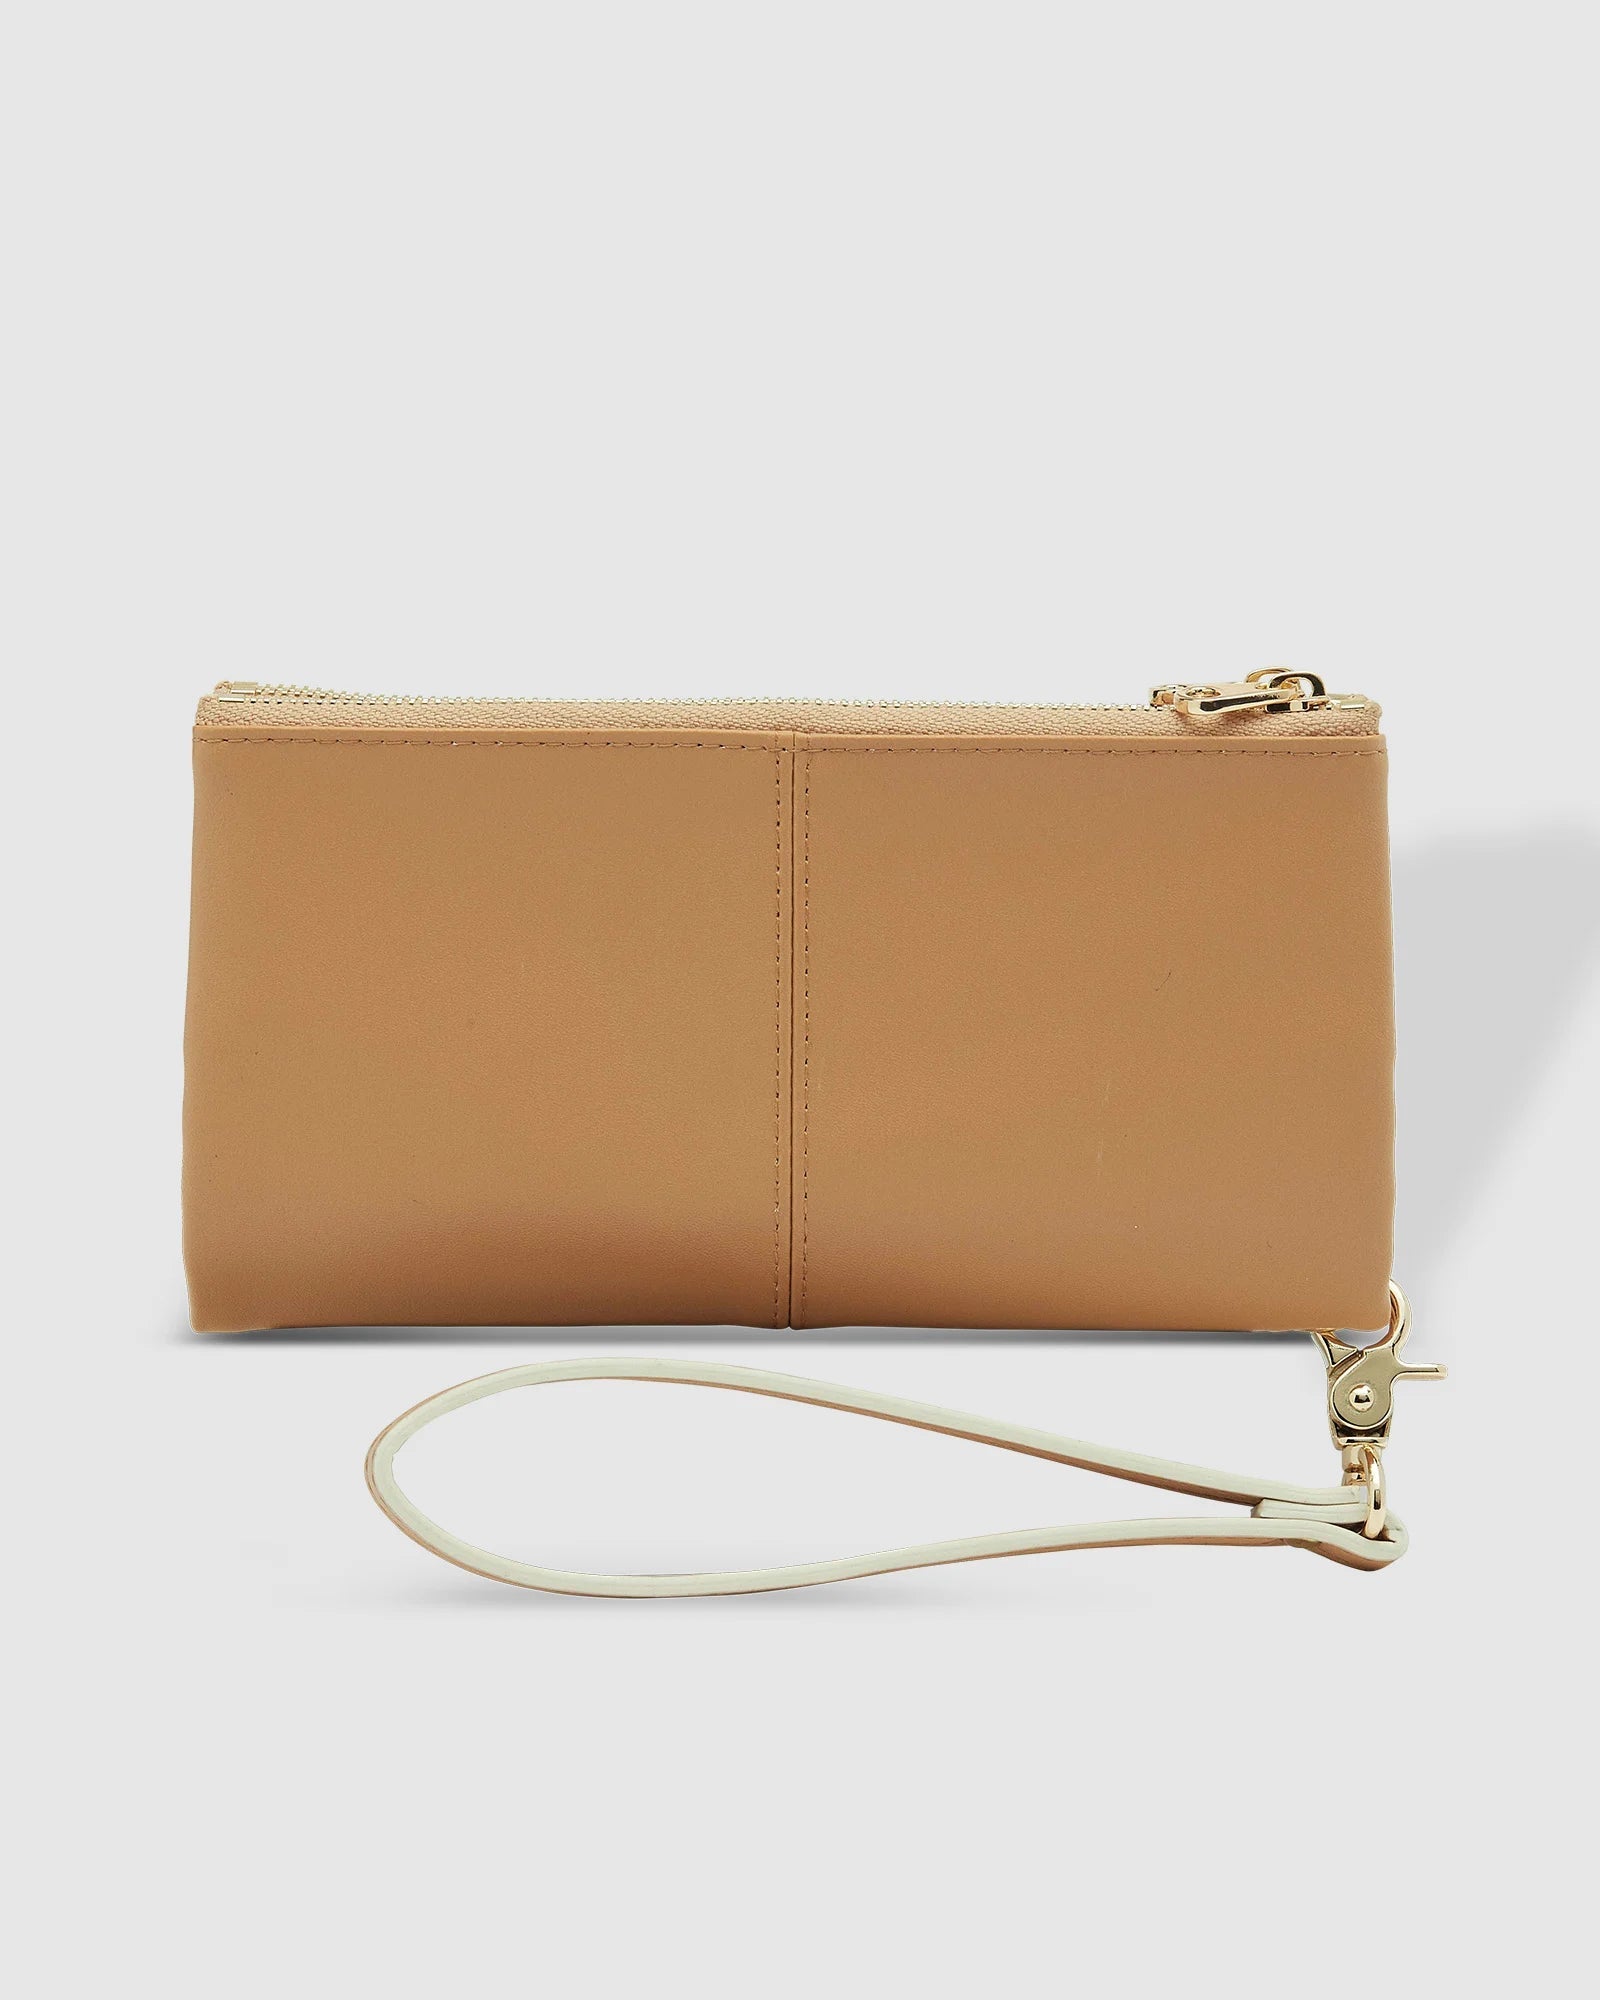 Louenhide Sailor Wallet - Camel Accessories - Other Accessories - Handbags & Wallets by Louenhide | Grace the Boutique